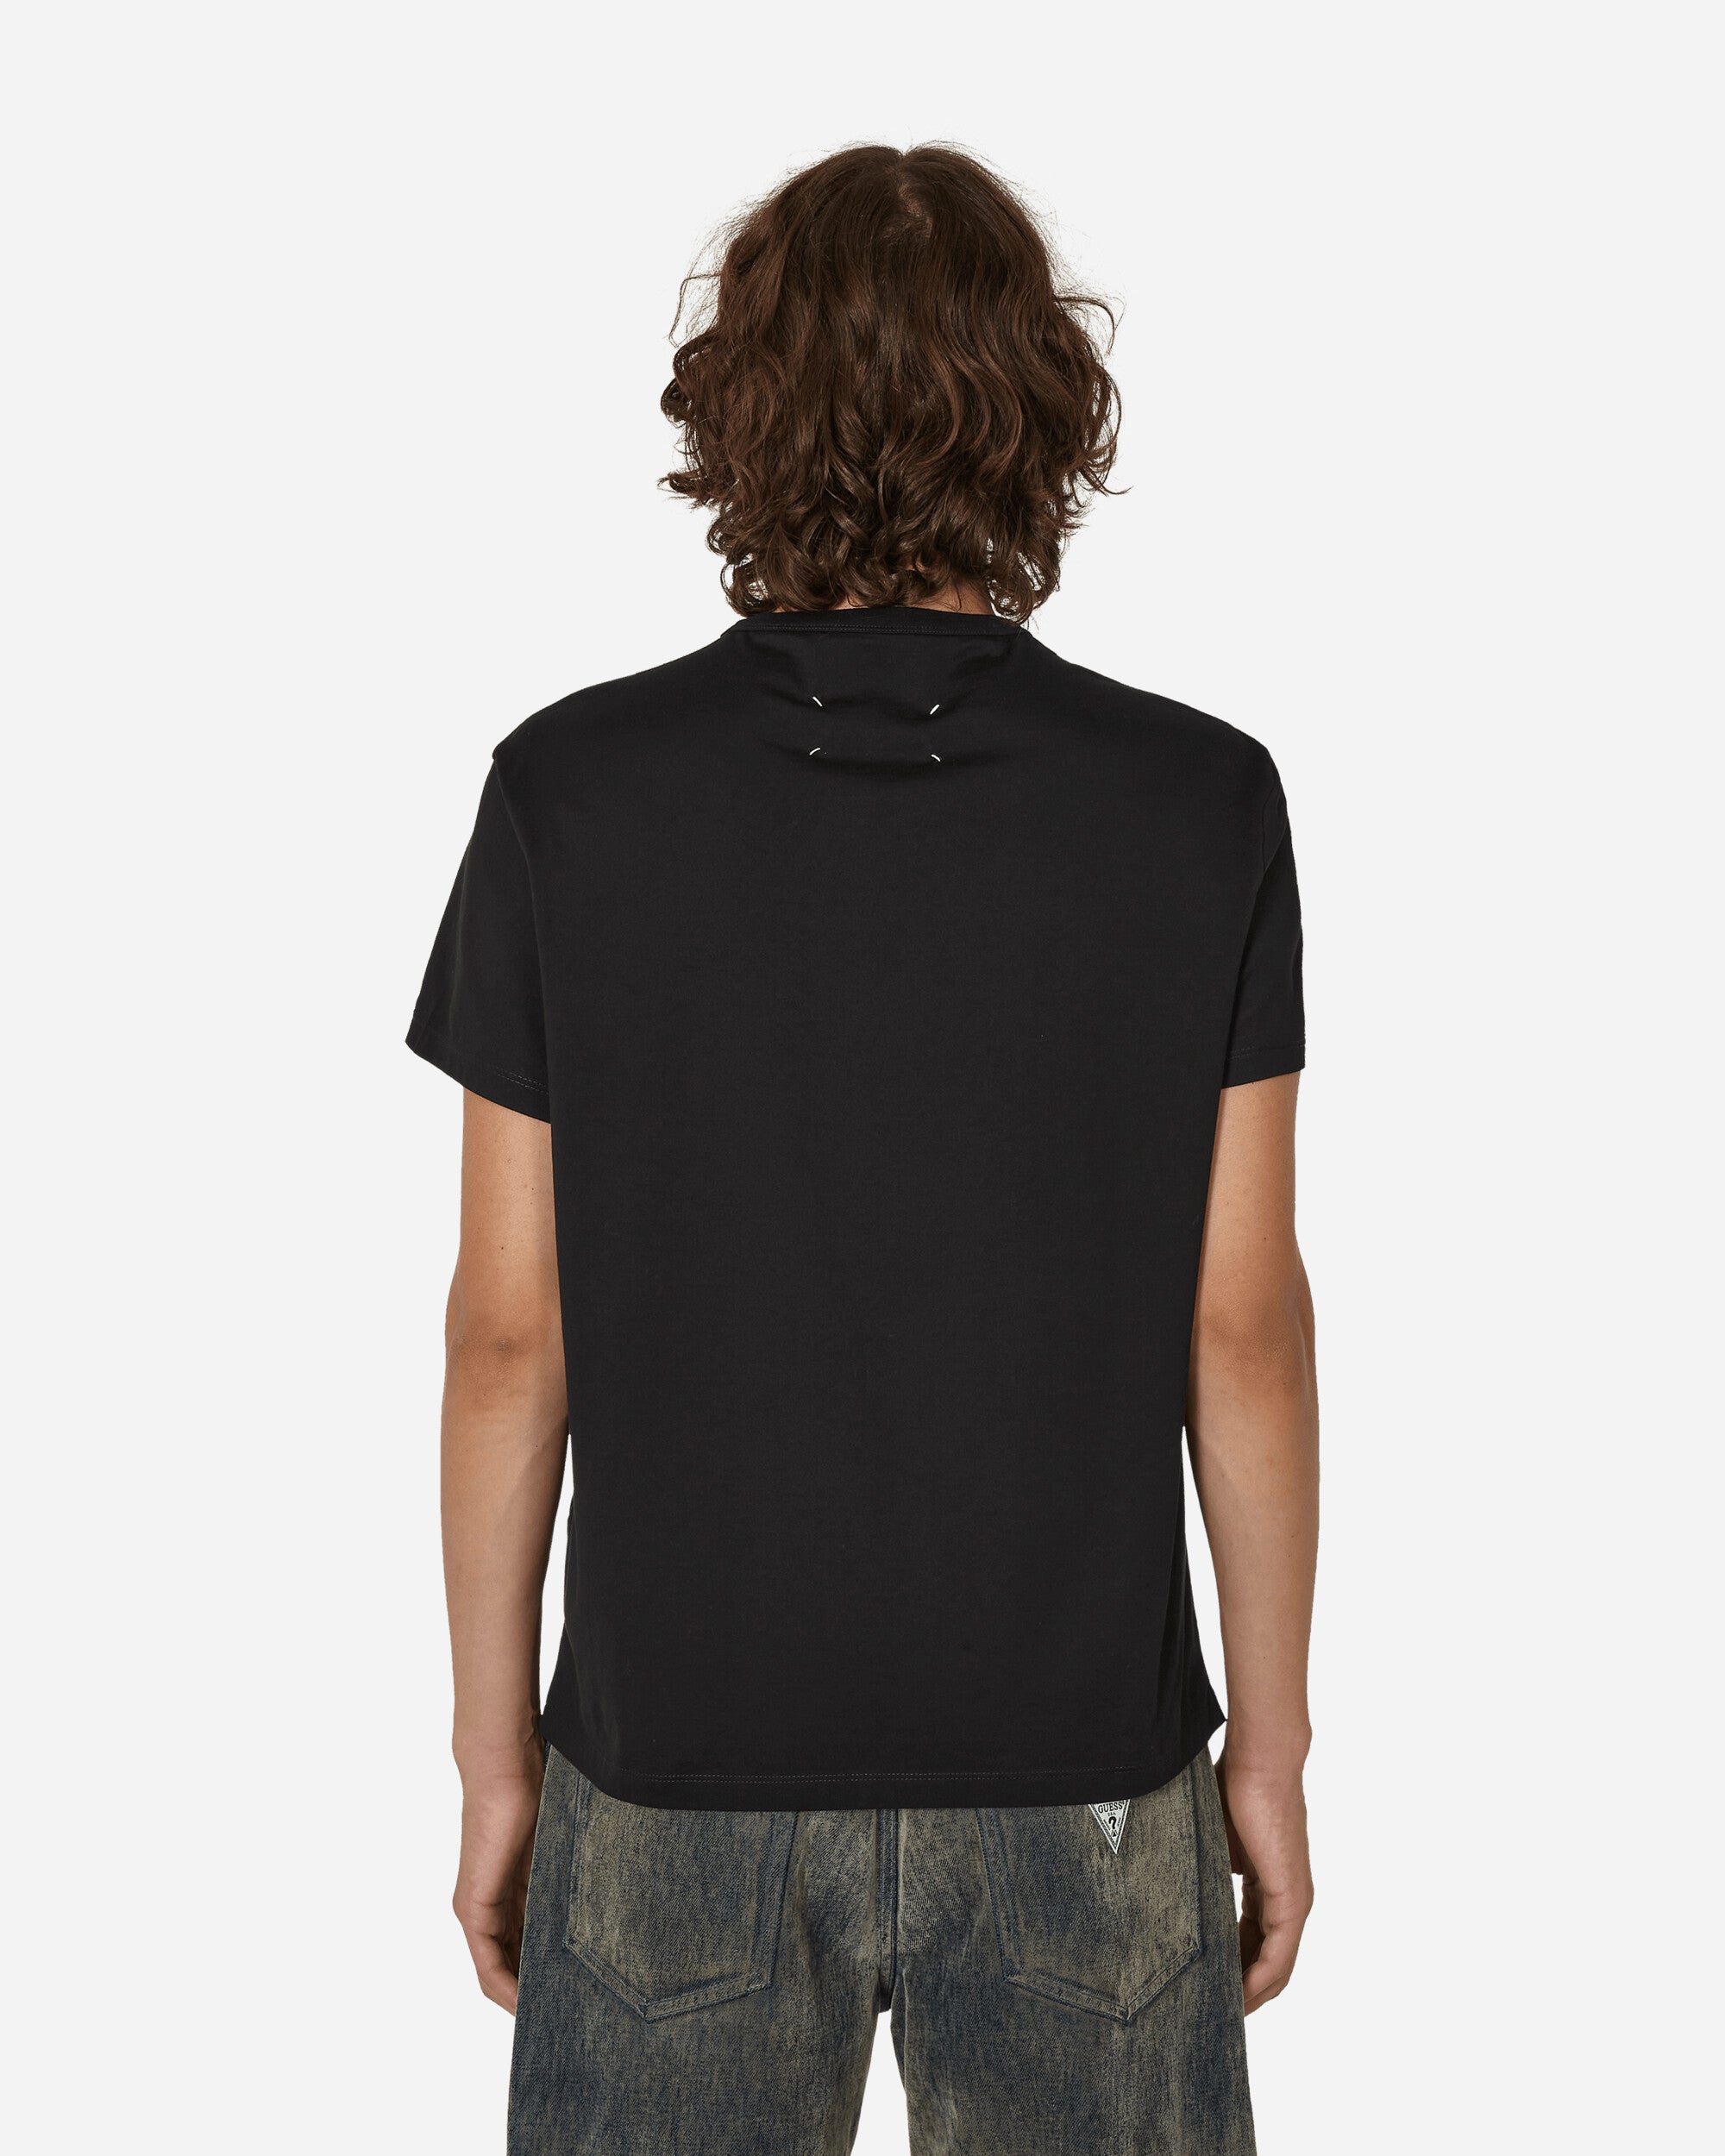 Maison Margiela T-Shirt Black/White Embroidery T-Shirts Shortsleeve S30GC0701 900